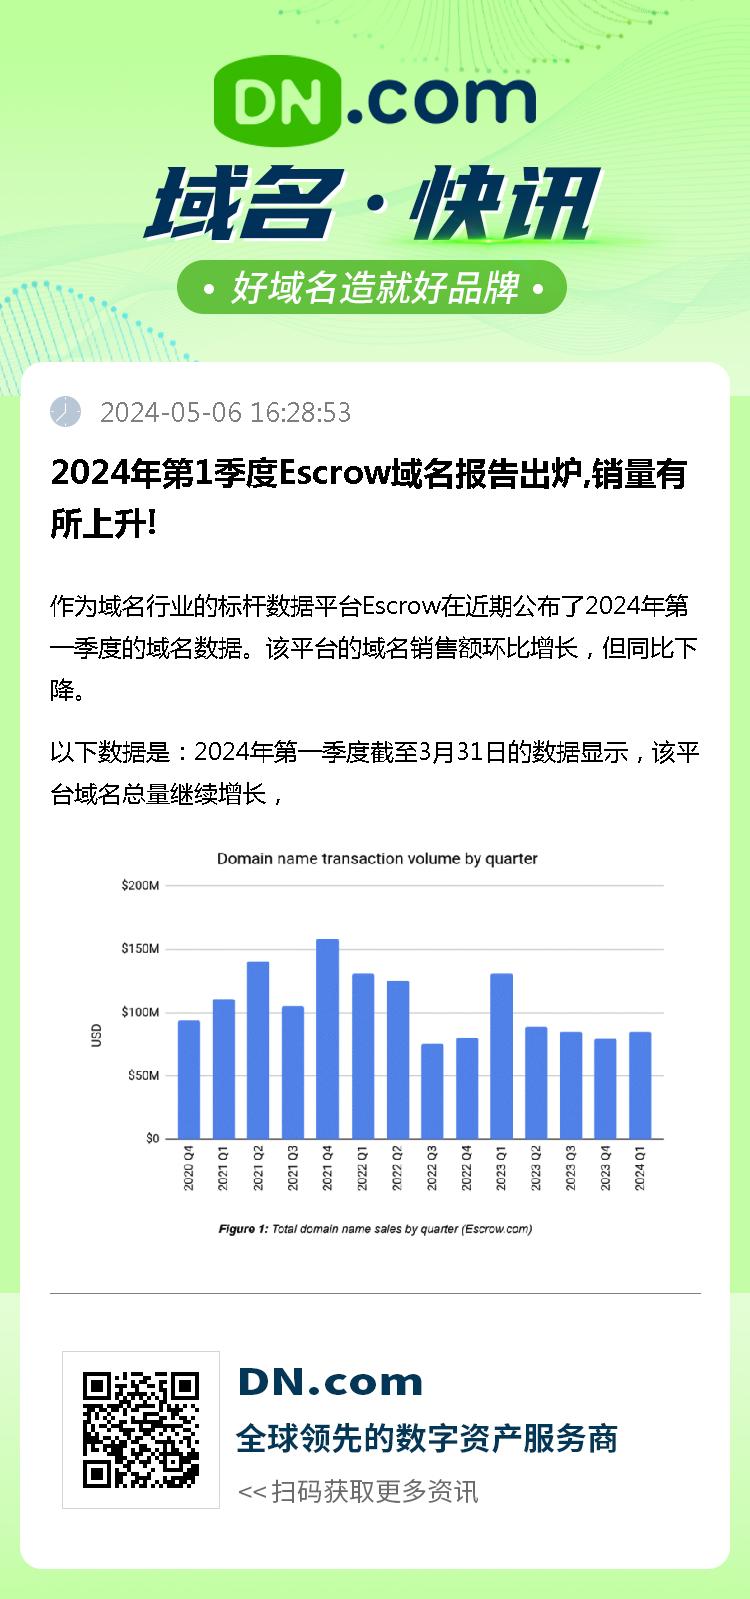 2024年第1季度Escrow域名报告出炉,销量有所上升!